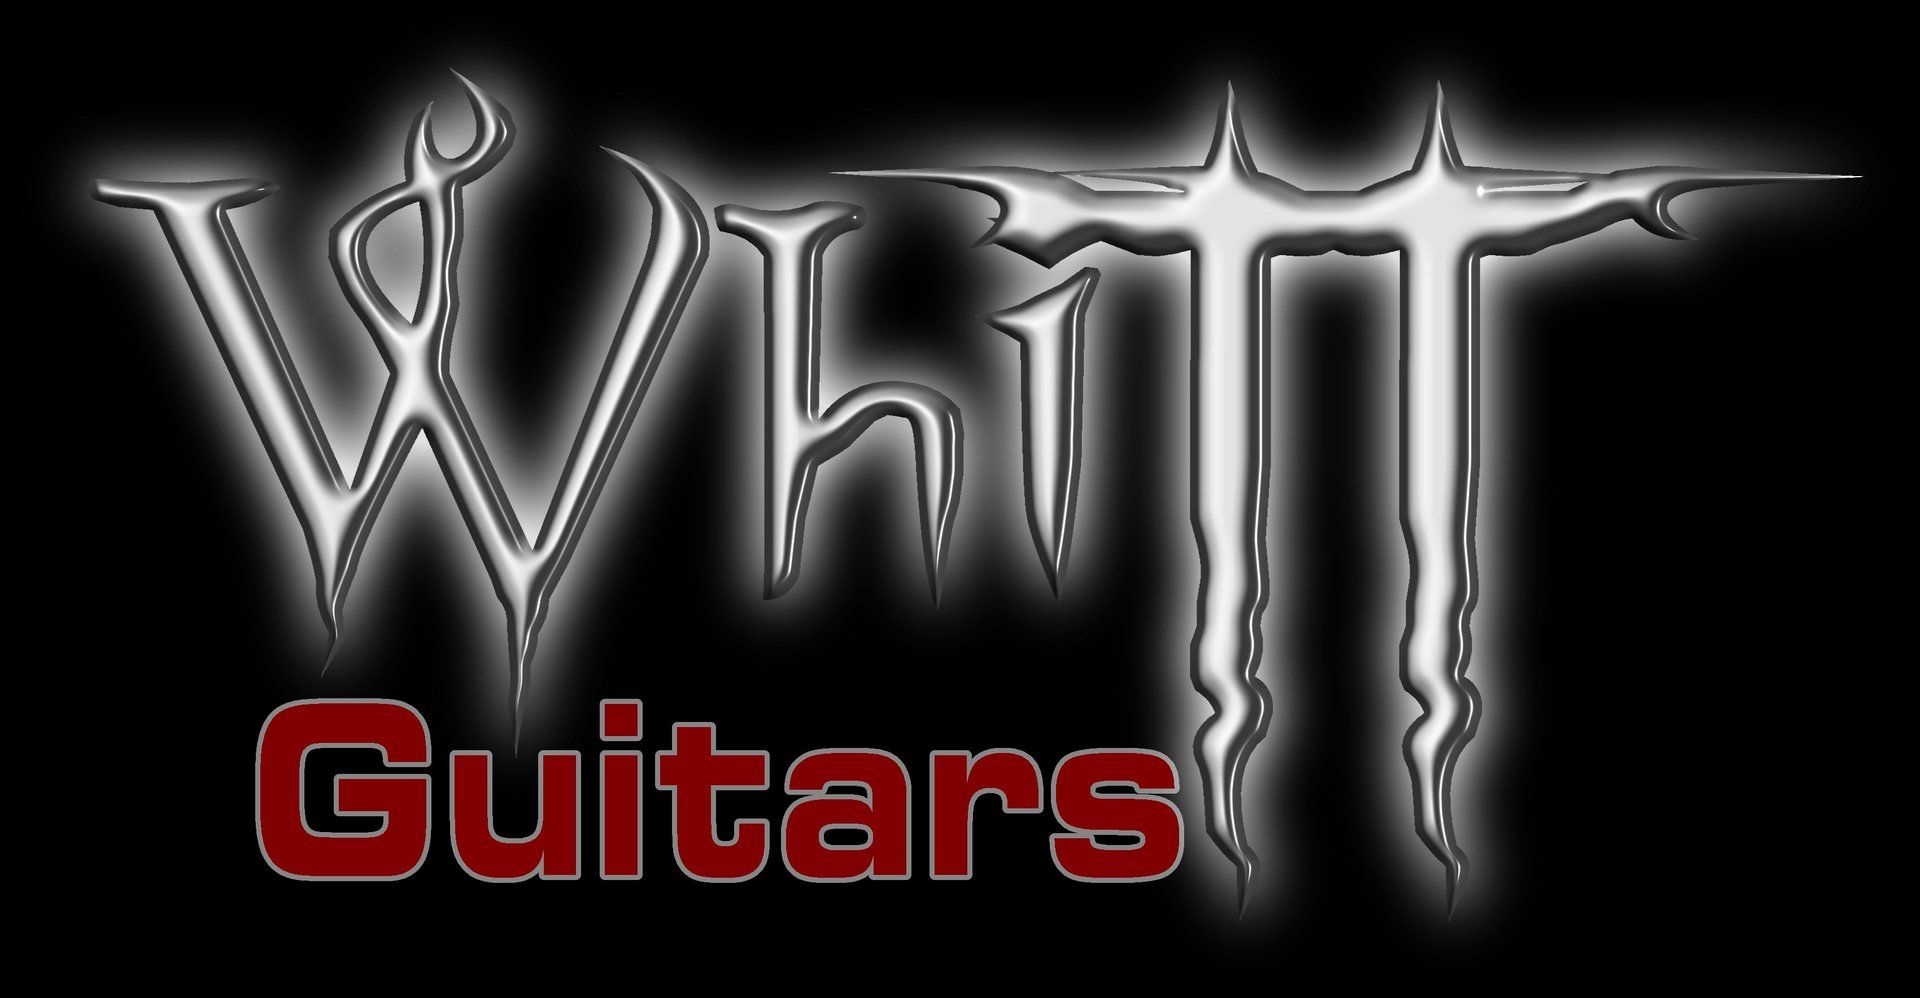 Whitt Guitars